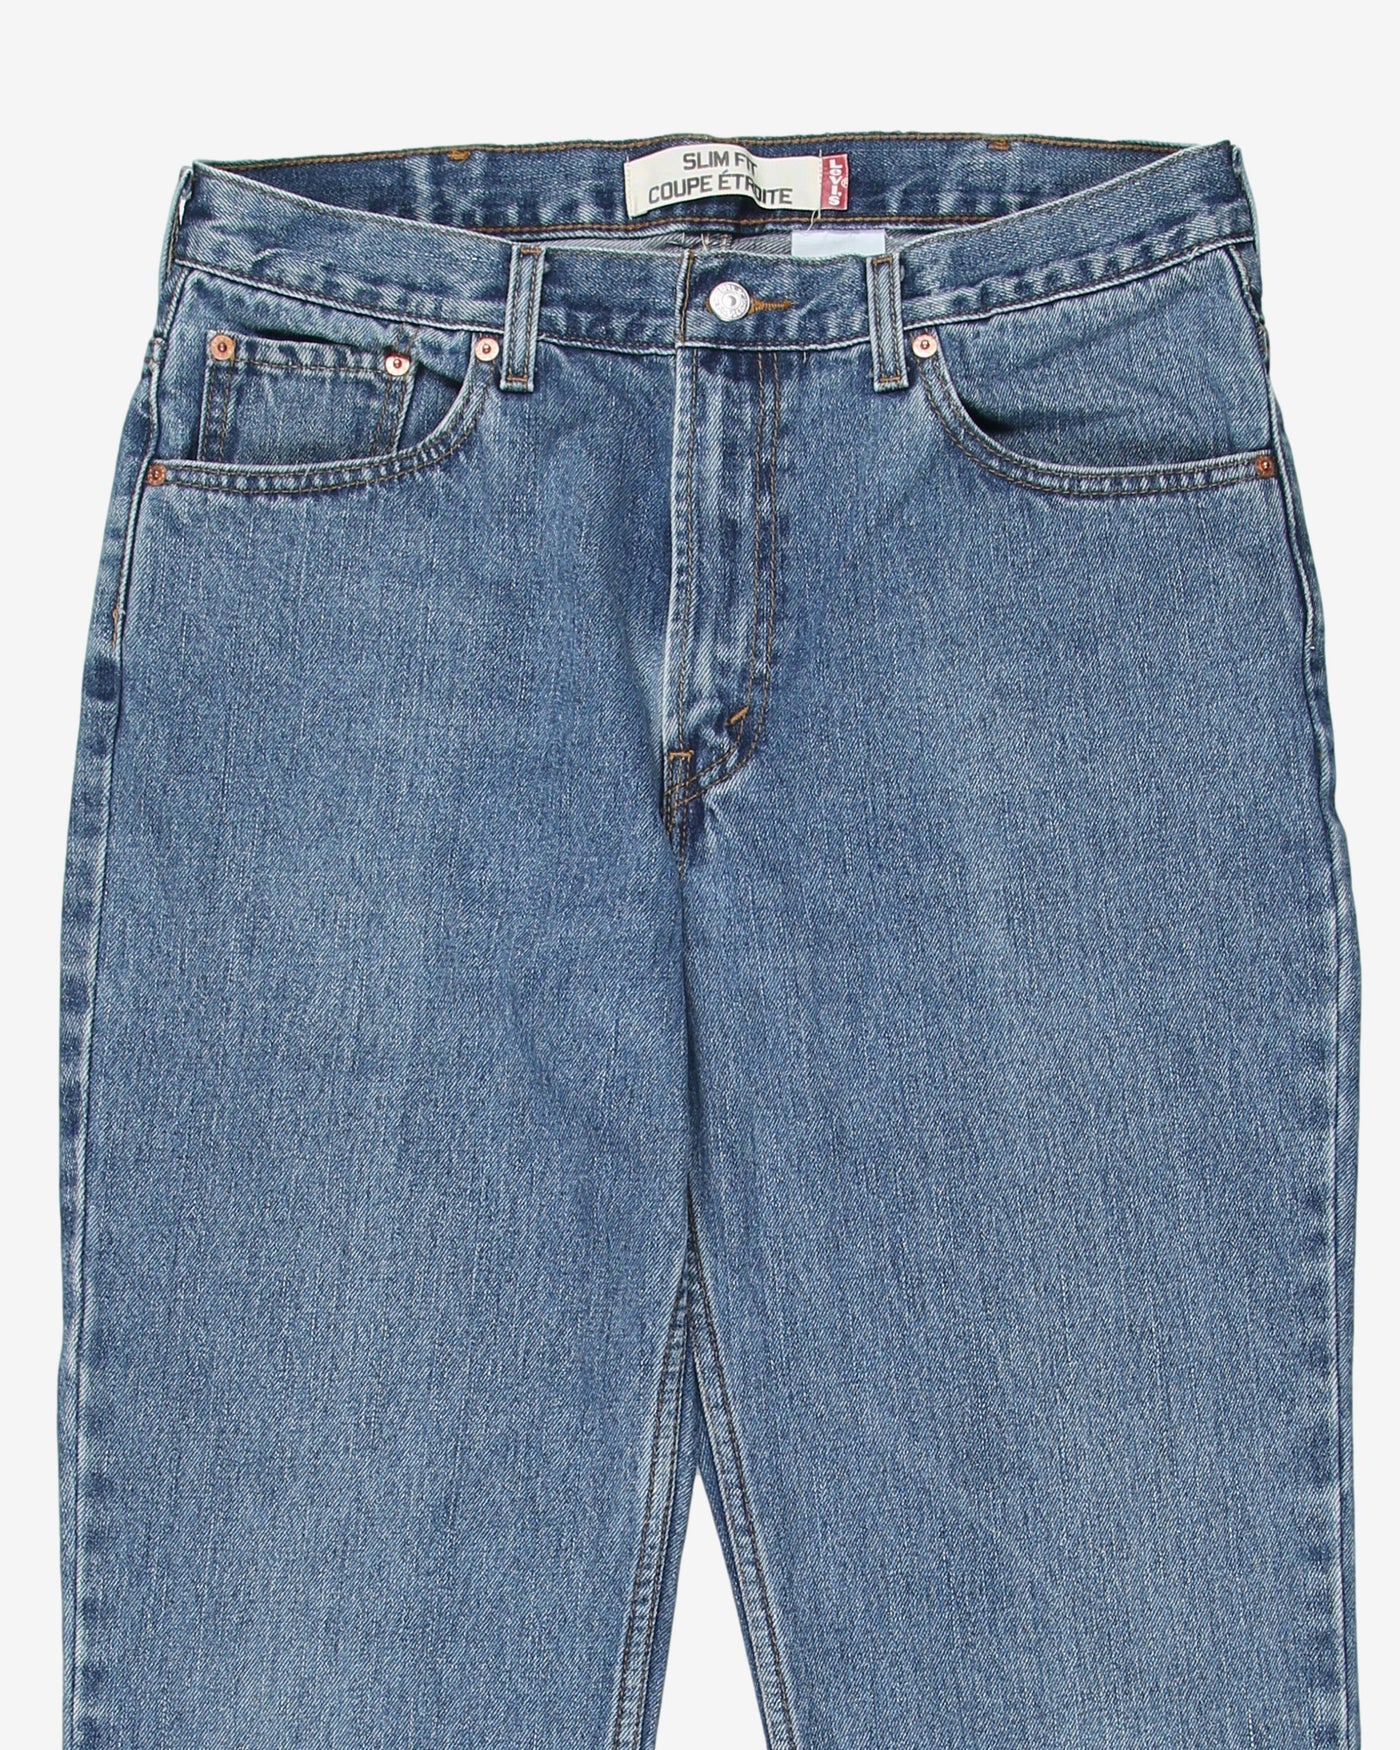 Levis vintage medium wash blue jeans - W33 L25